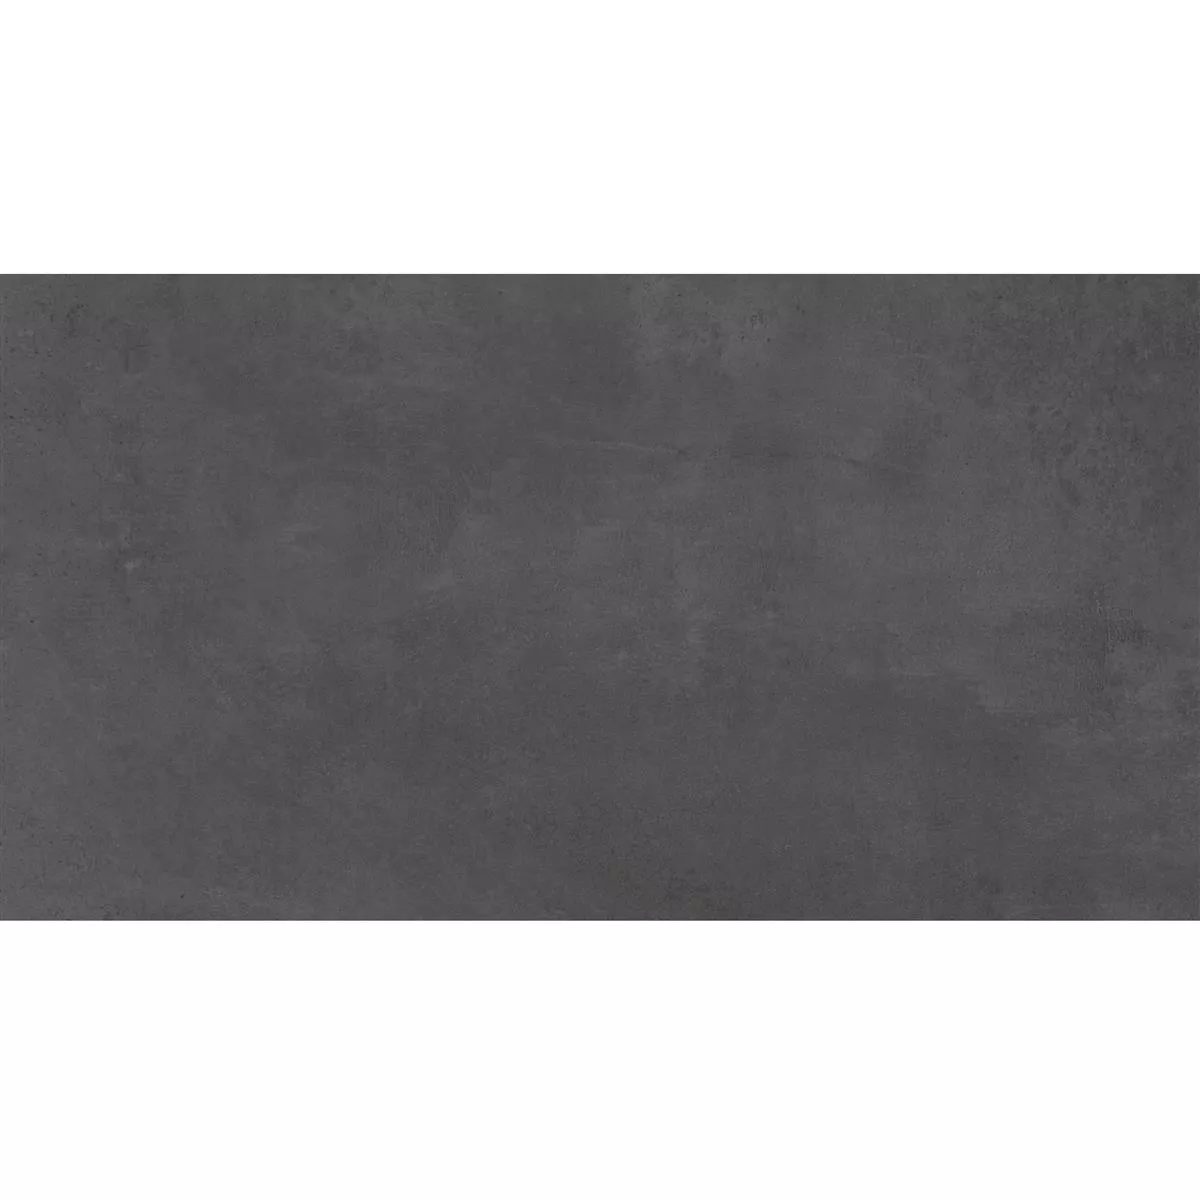 Πλακάκια Δαπέδου Assos Συγκεκριμένη Εμφάνιση R10/B Ανθρακίτης 30x60cm